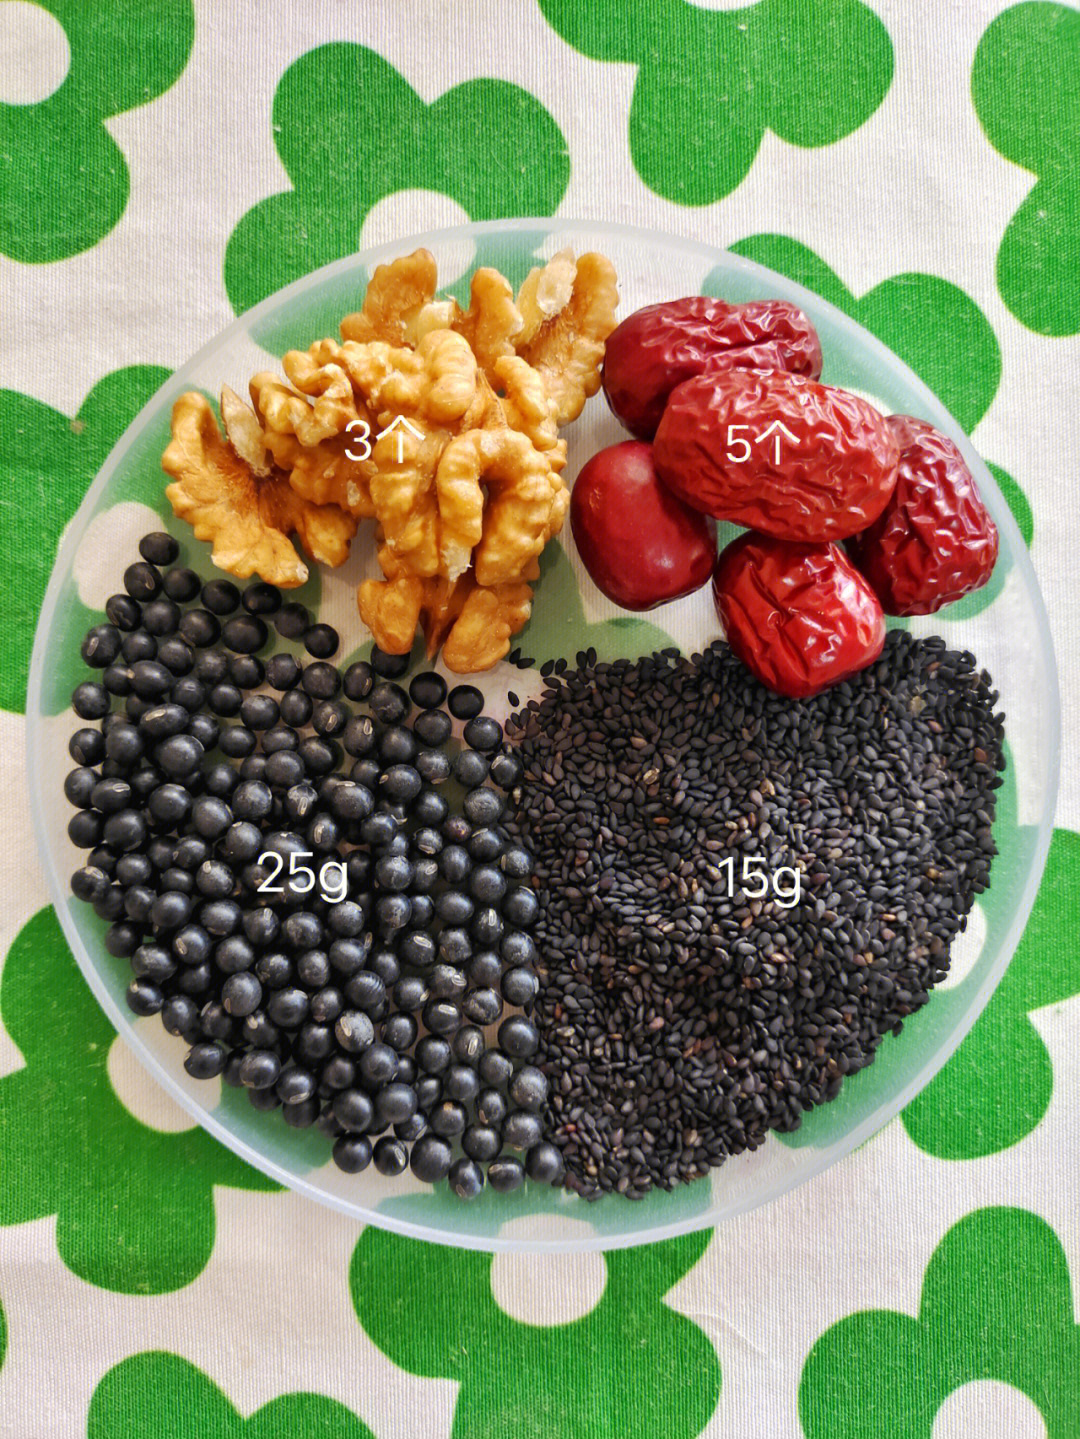 黑芝麻15g 黑豆25g 3个核桃 5个红枣水量:800ml(3人量)